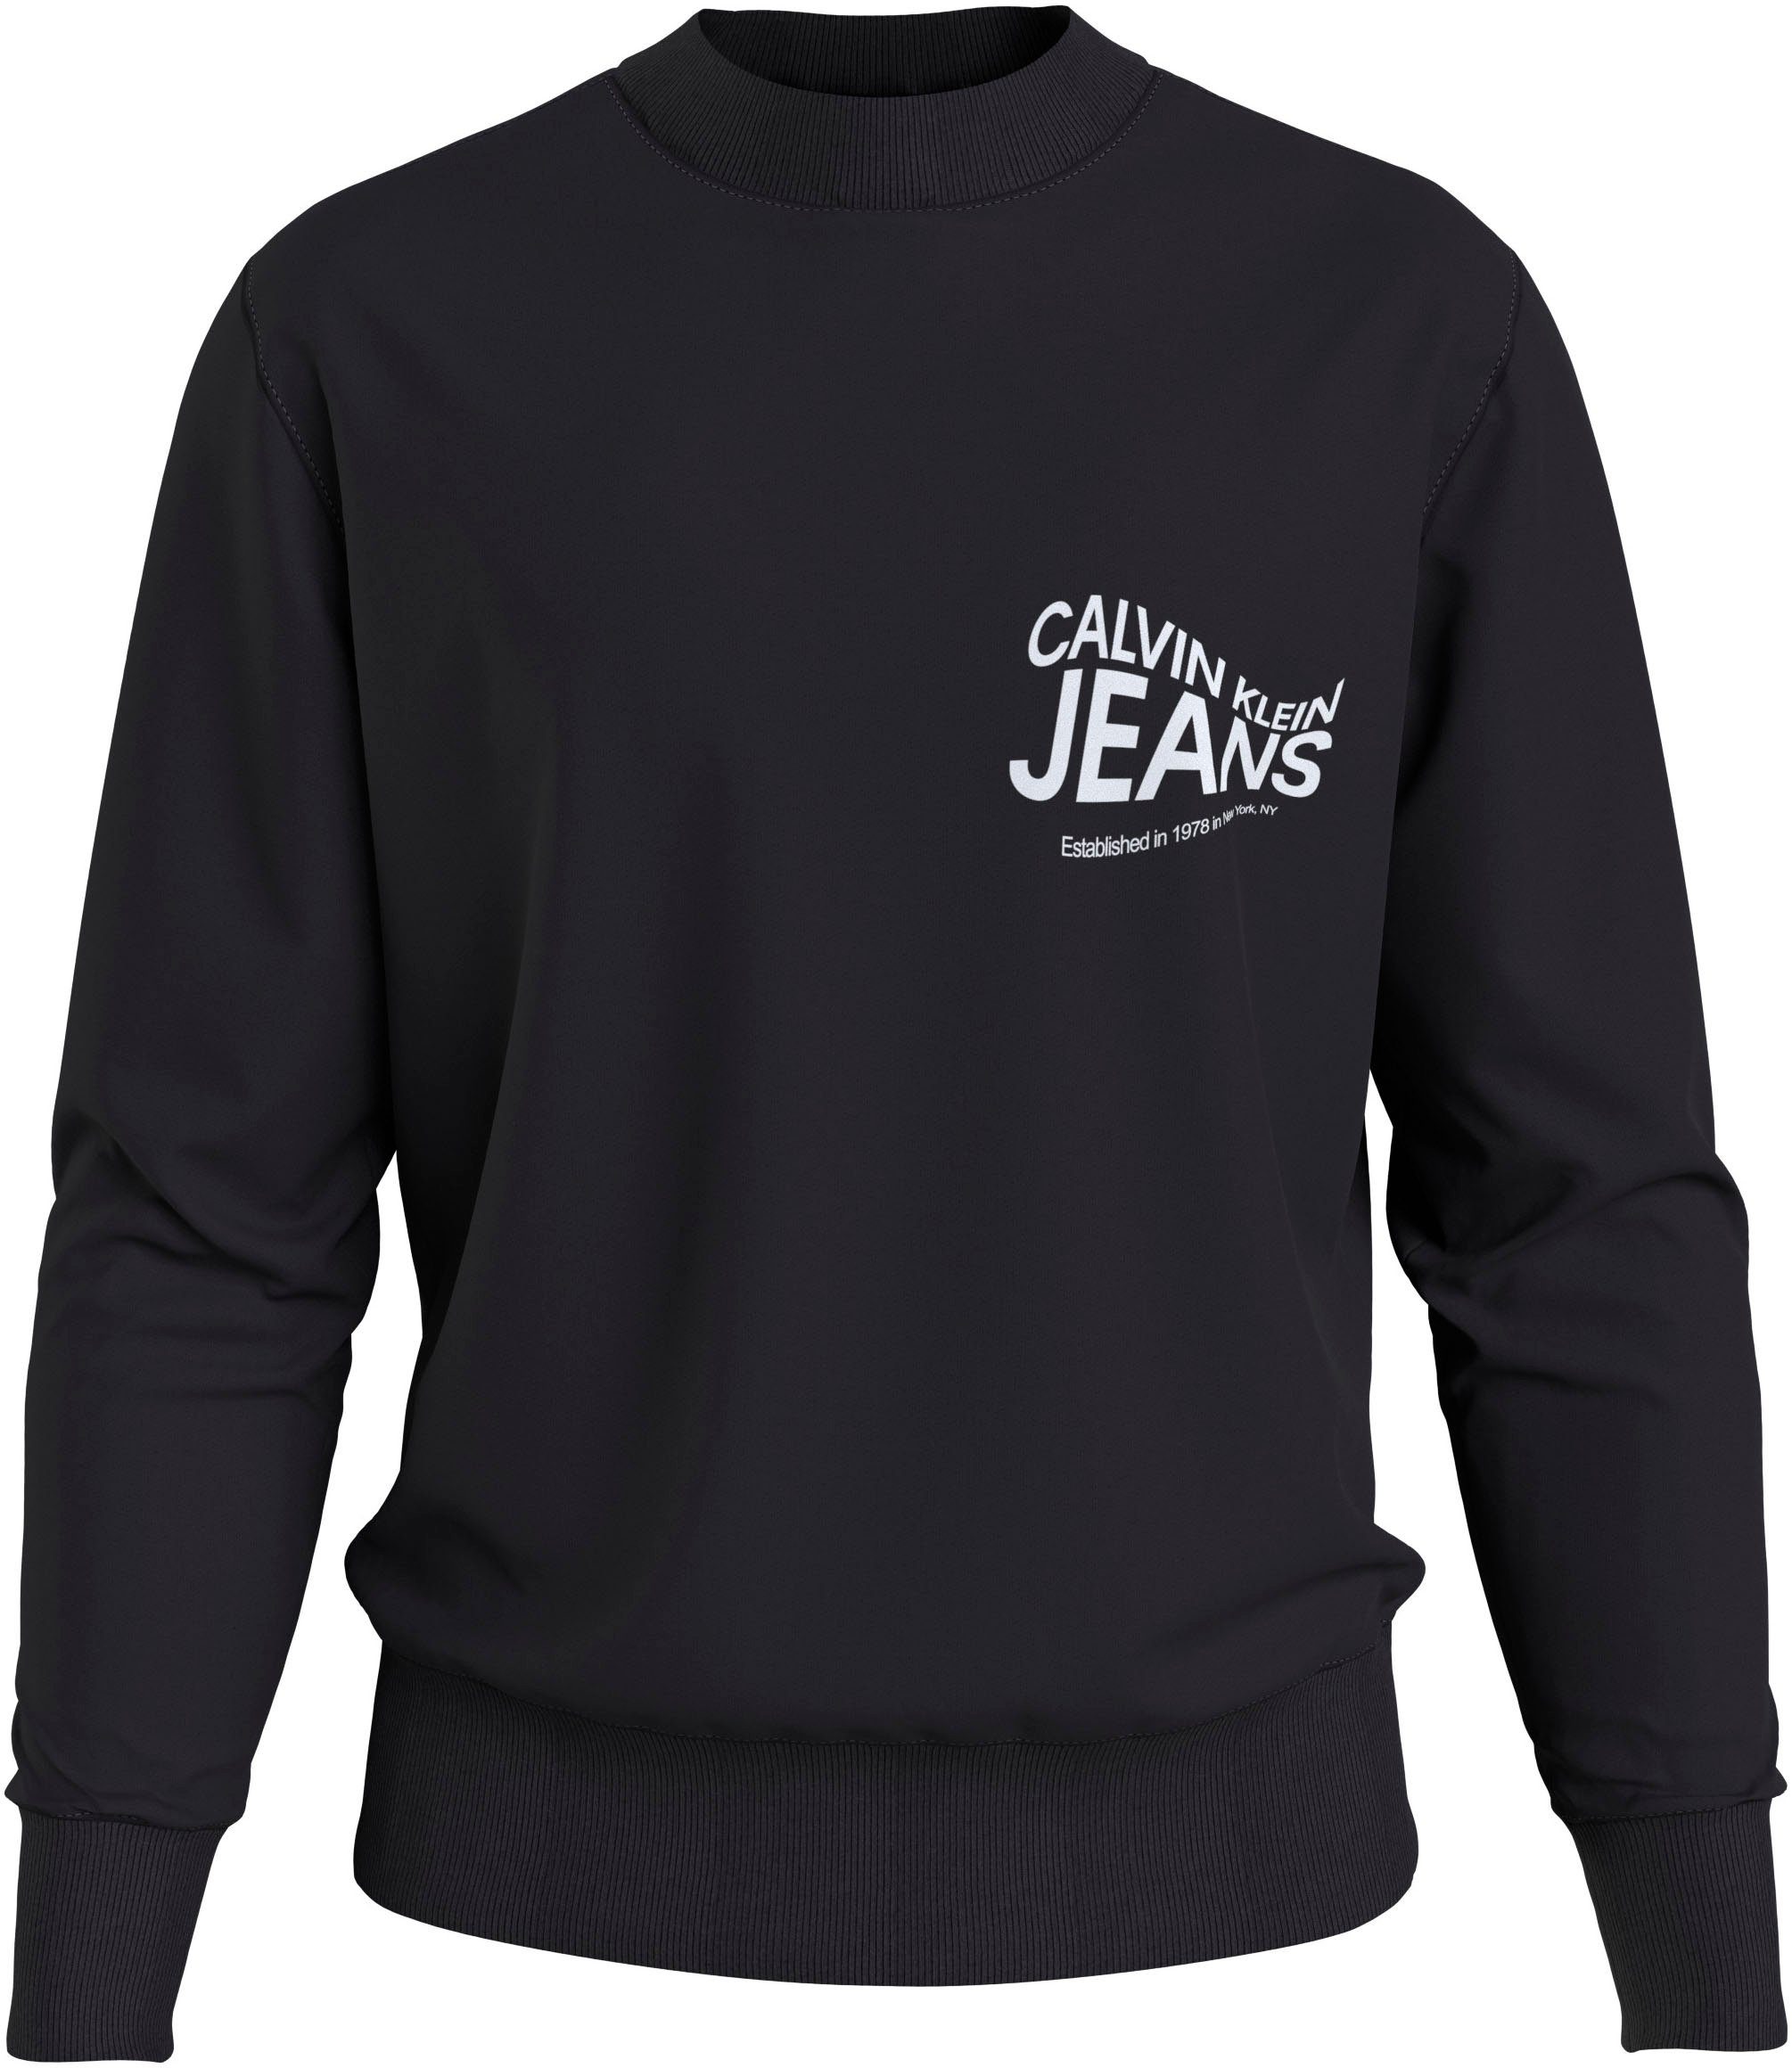 MOTION Jeans FUTURE GRAPHIC NECK CREW Sweatshirt Klein Calvin